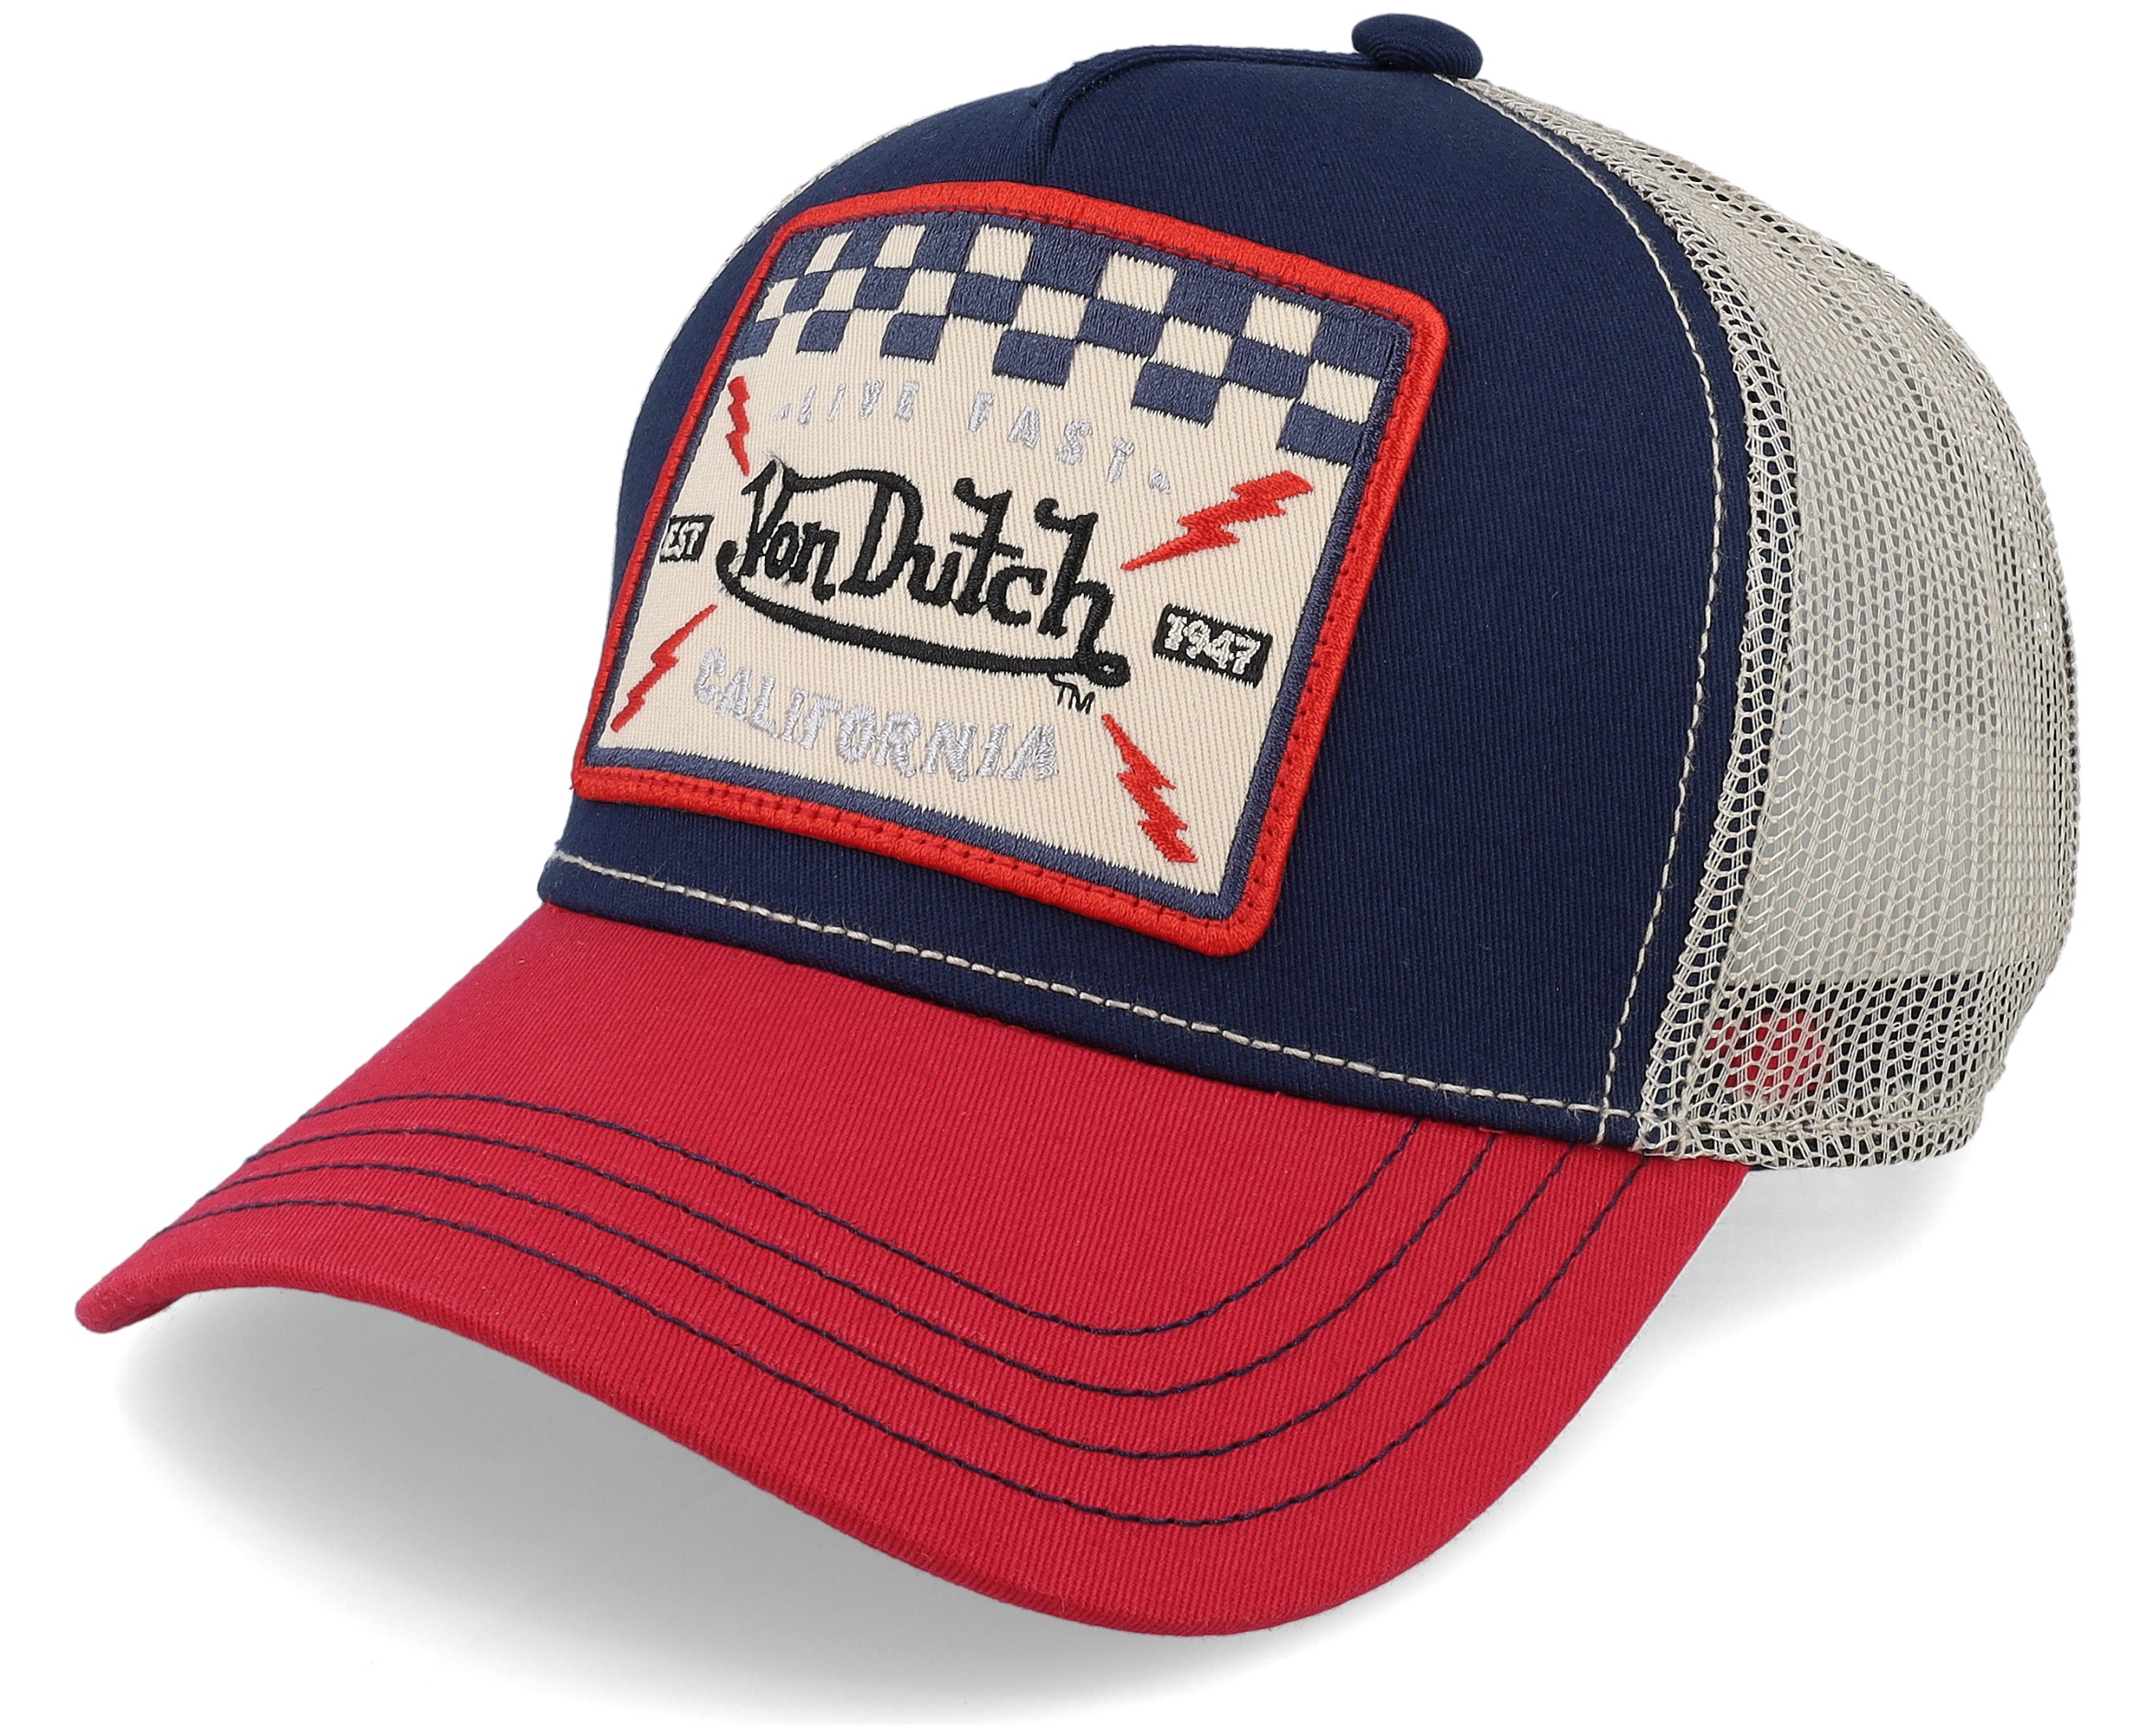 Vintage Blue, White and Red Von DUTCH Cap / Von Dutch Cap / Von Dutch  Trucker Cap 